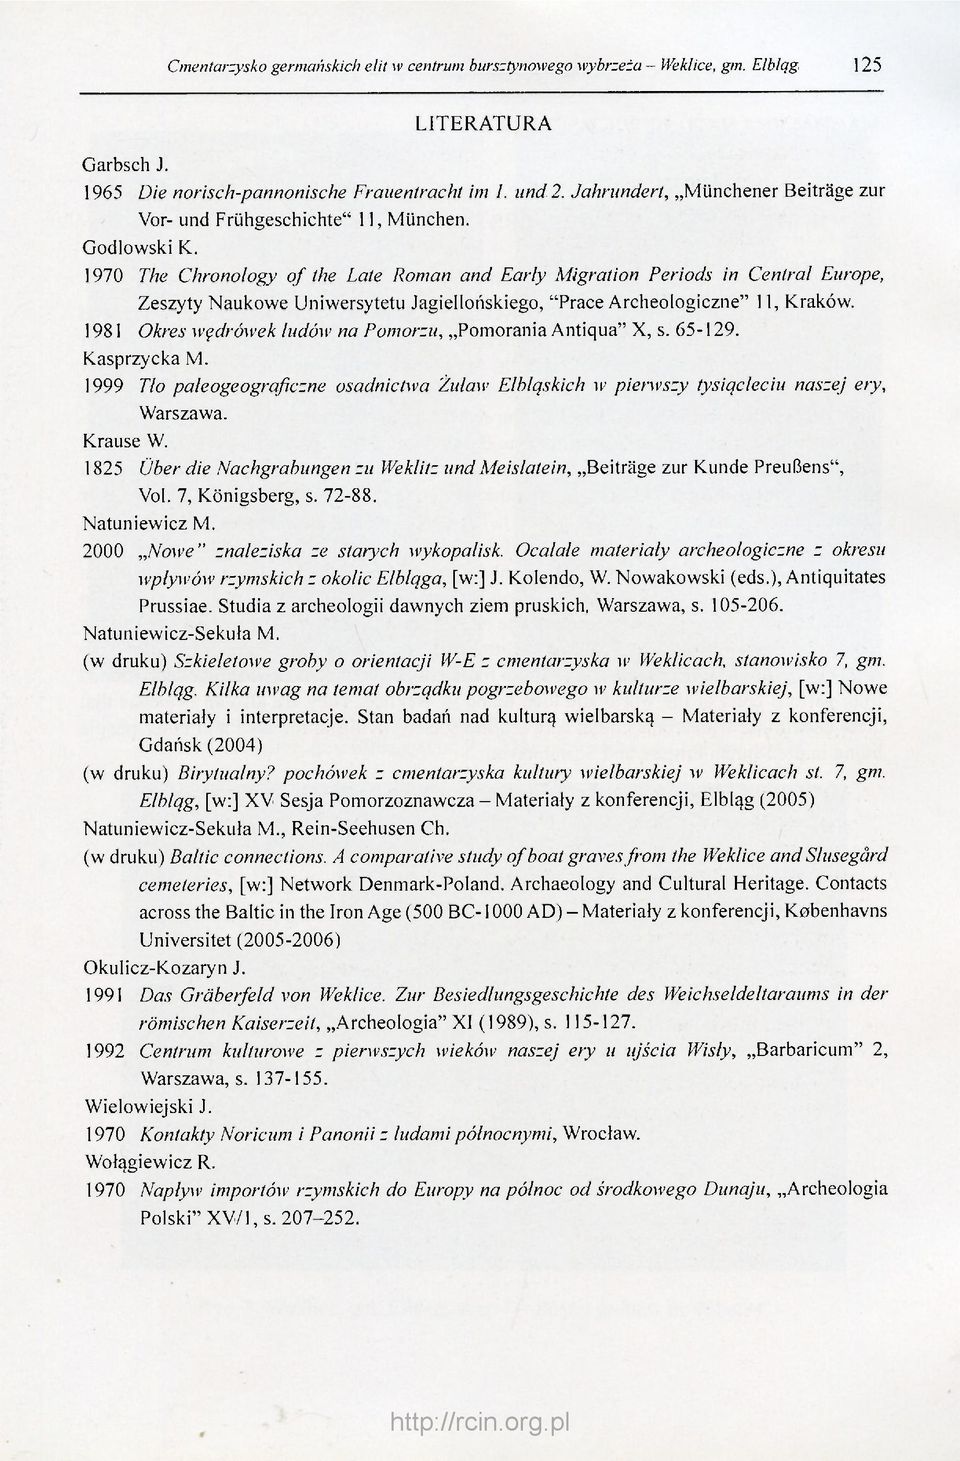 1970 The Chronology of the Late Roman and Early Migration Periods in Central Europe, Zeszyty Naukowe Uniwersytetu Jagiellońskiego, "Prace Archeologiczne" 11, Kraków.